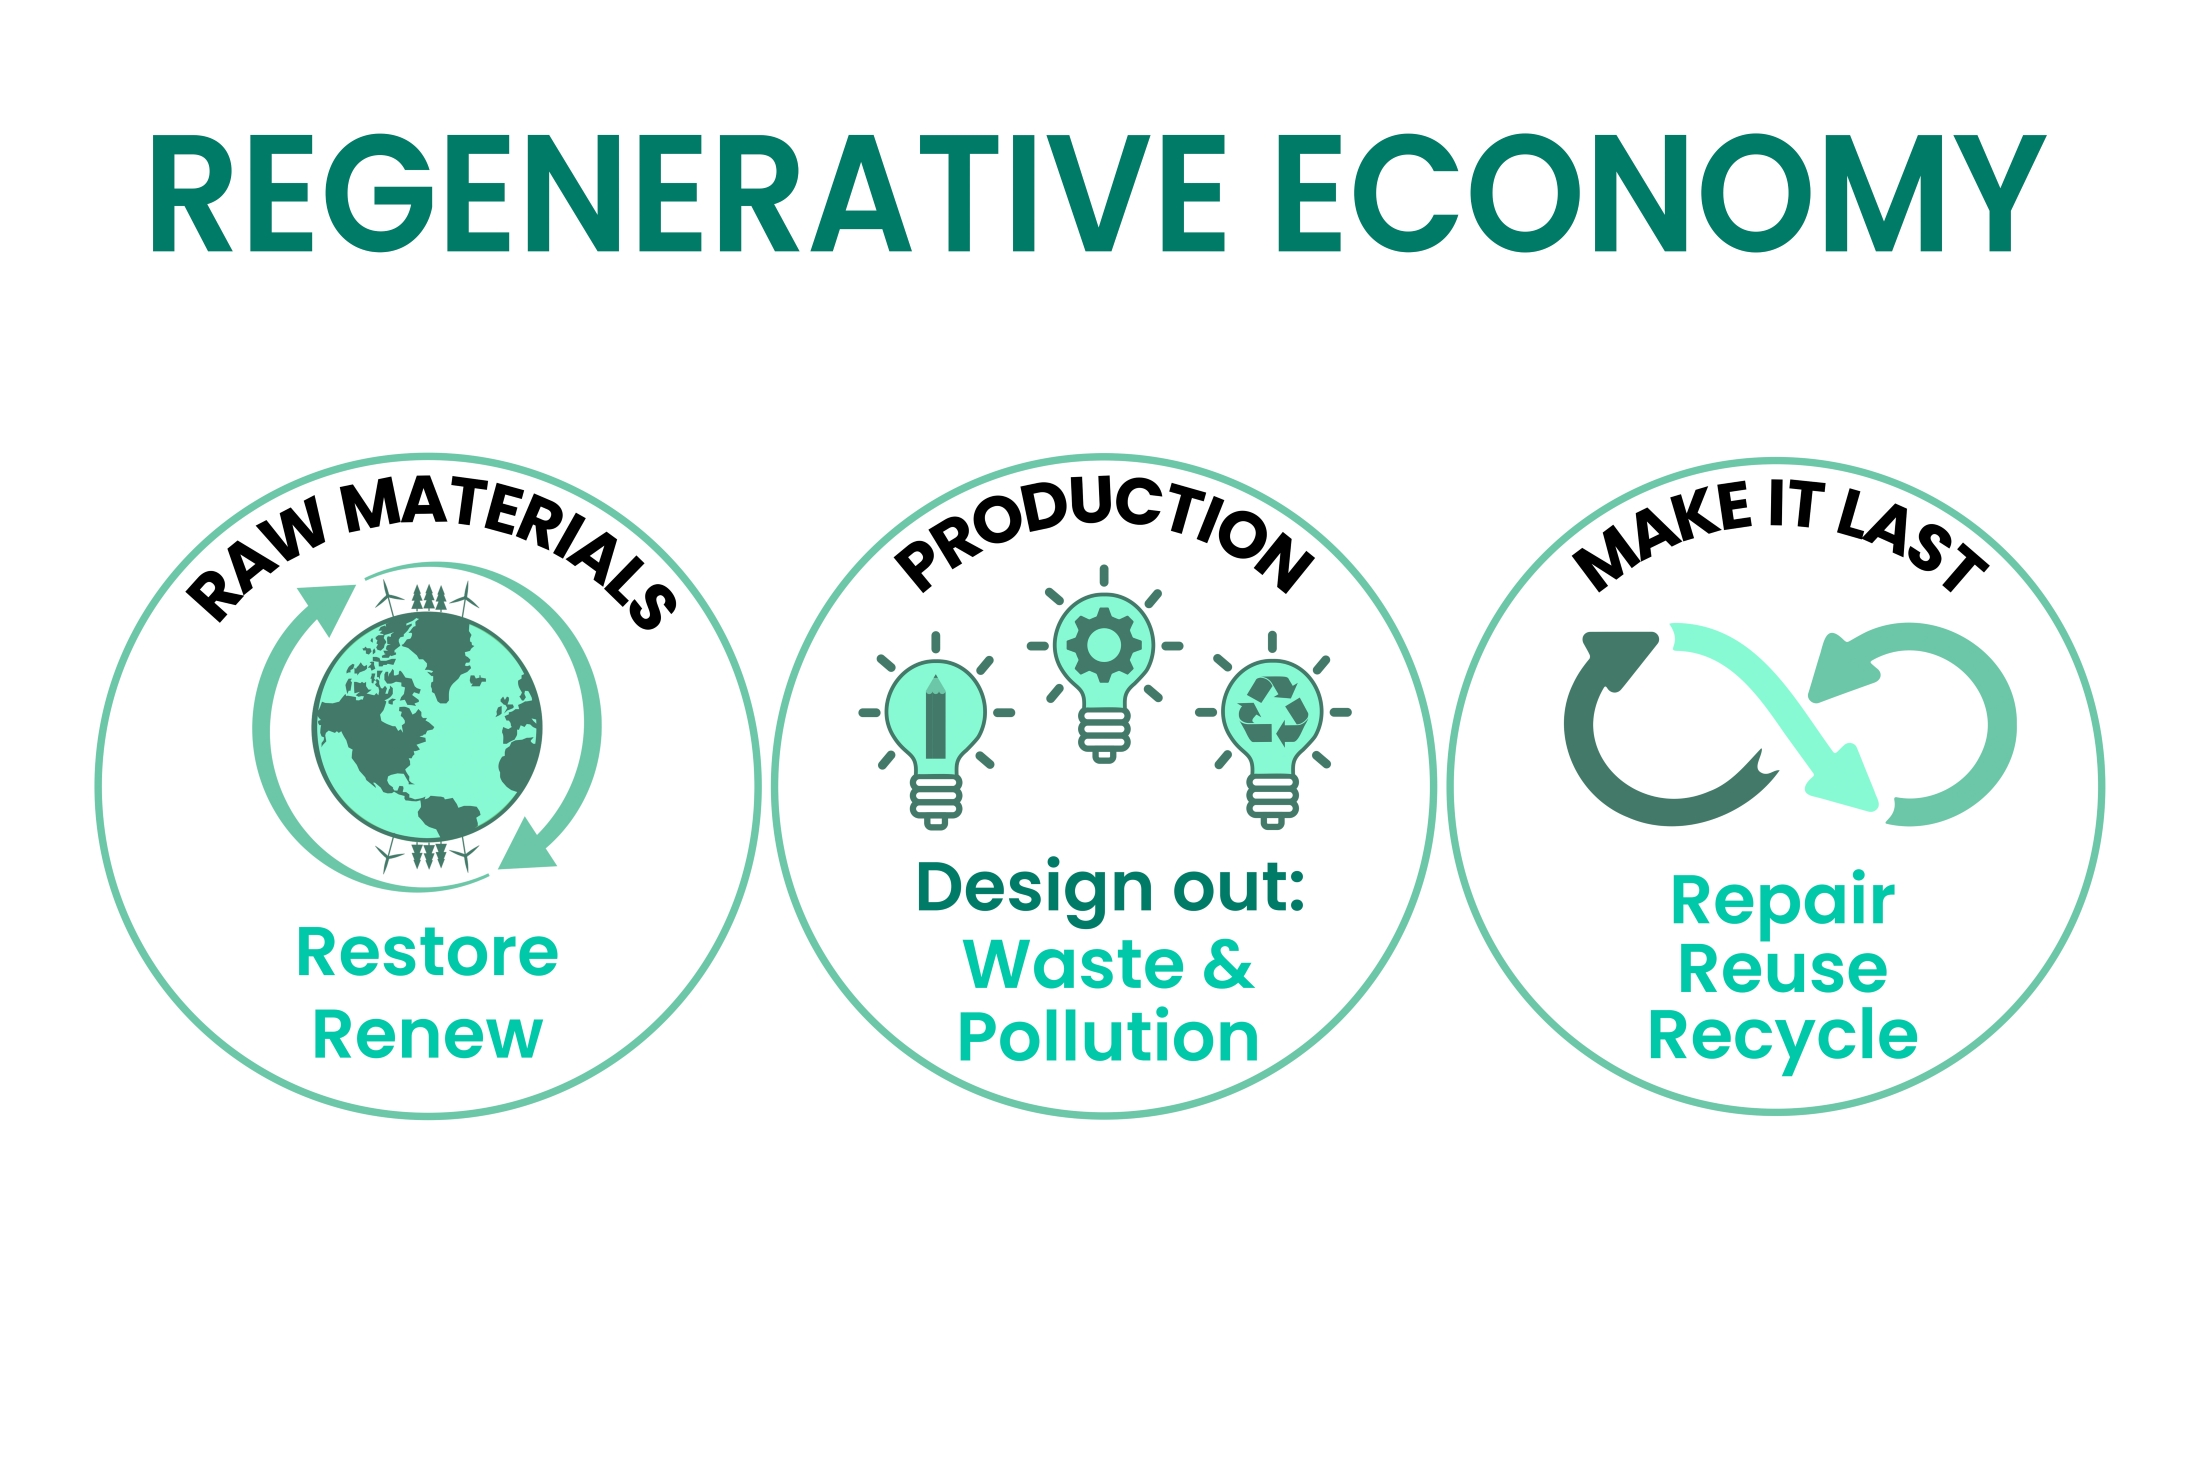 regenerative-economy-infographic